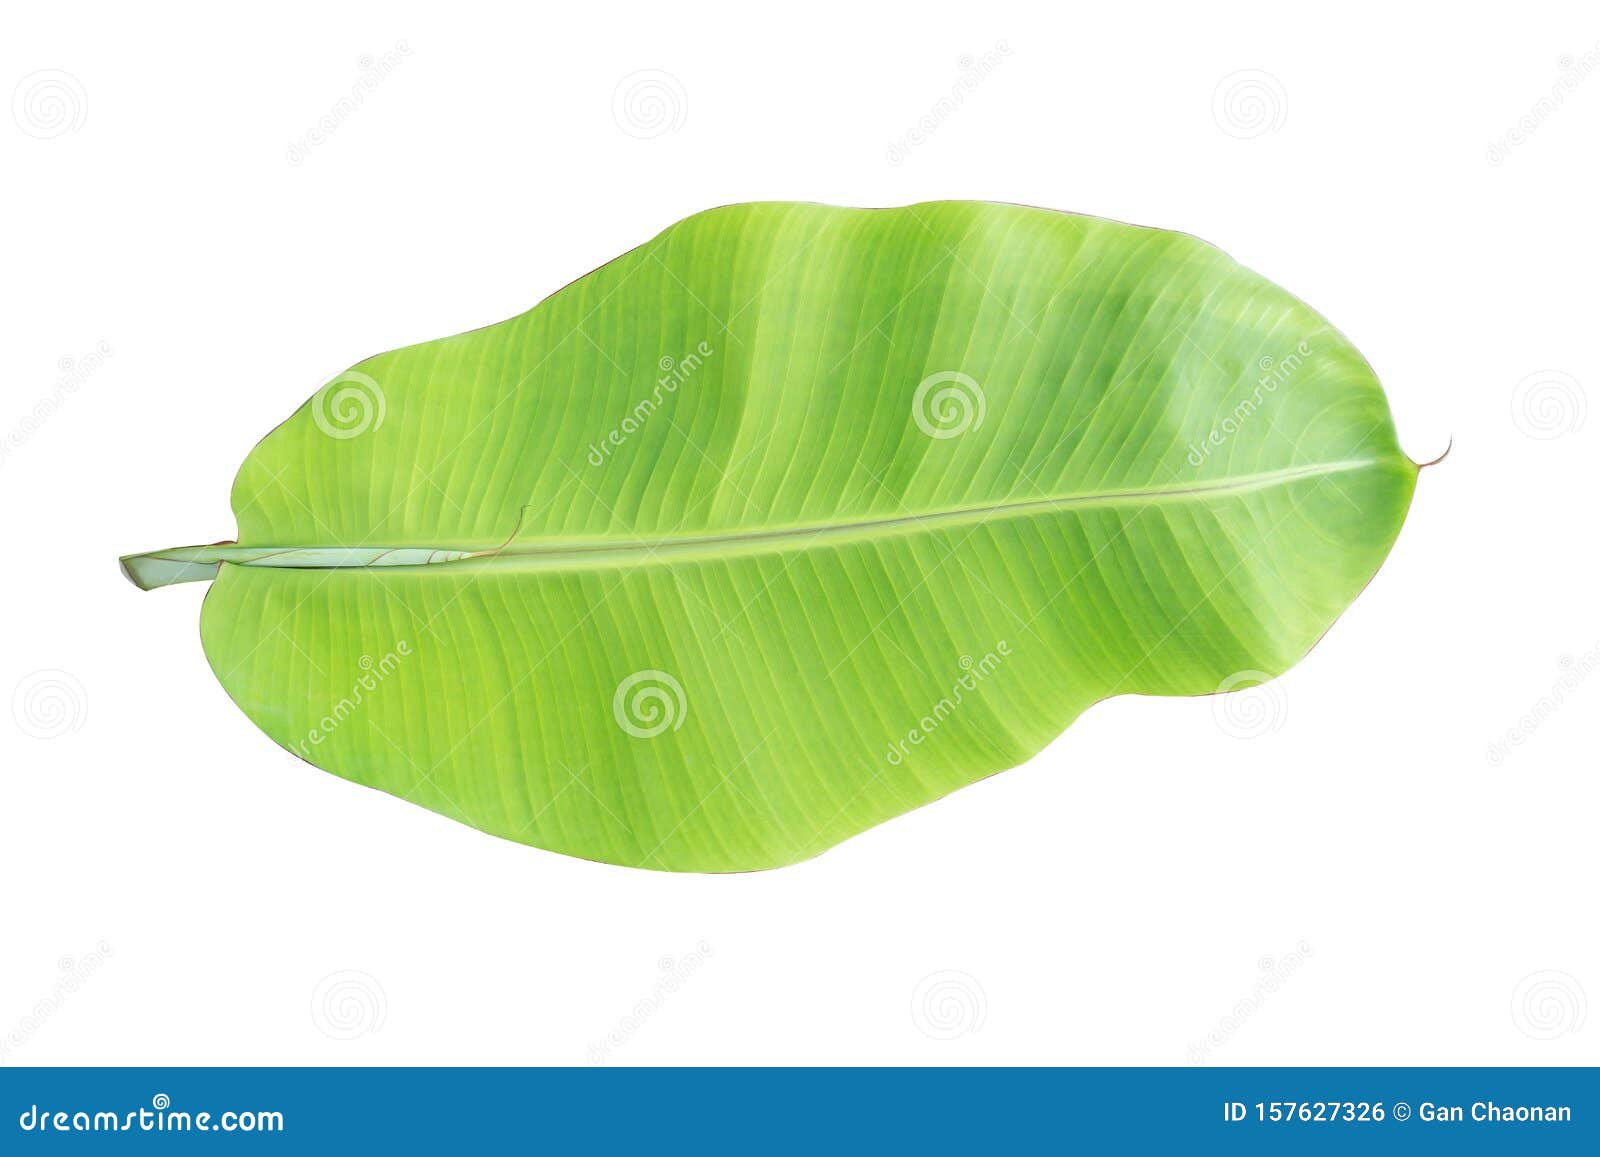 Banana Leaf Isolated on White Background Stock Photo - Image of green